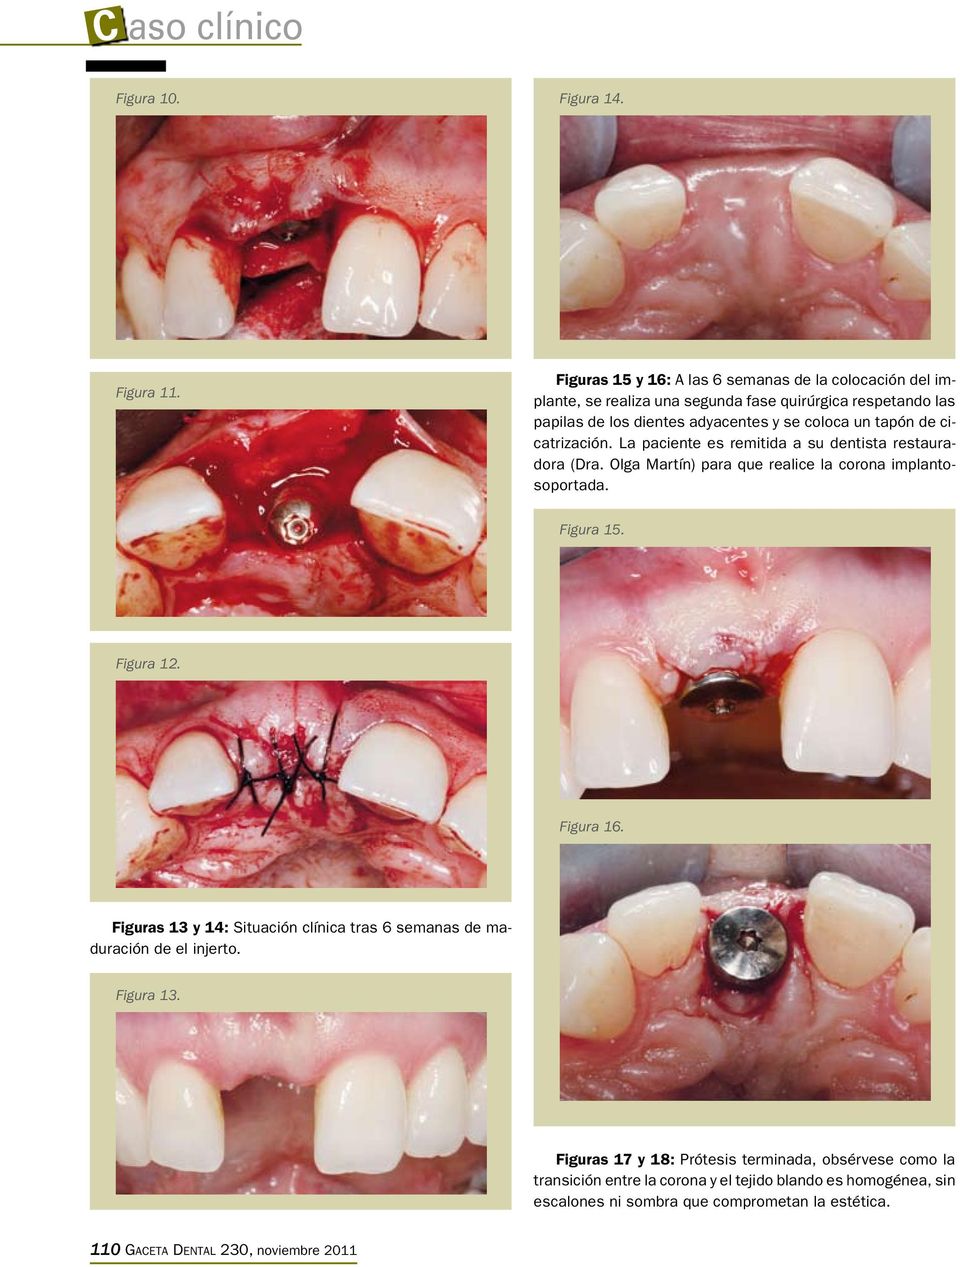 tapón de cicatrización. La paciente es remitida a su dentista restauradora (Dra. Olga Martín) para que realice la corona implantosoportada. Figura 15. Figura 12.